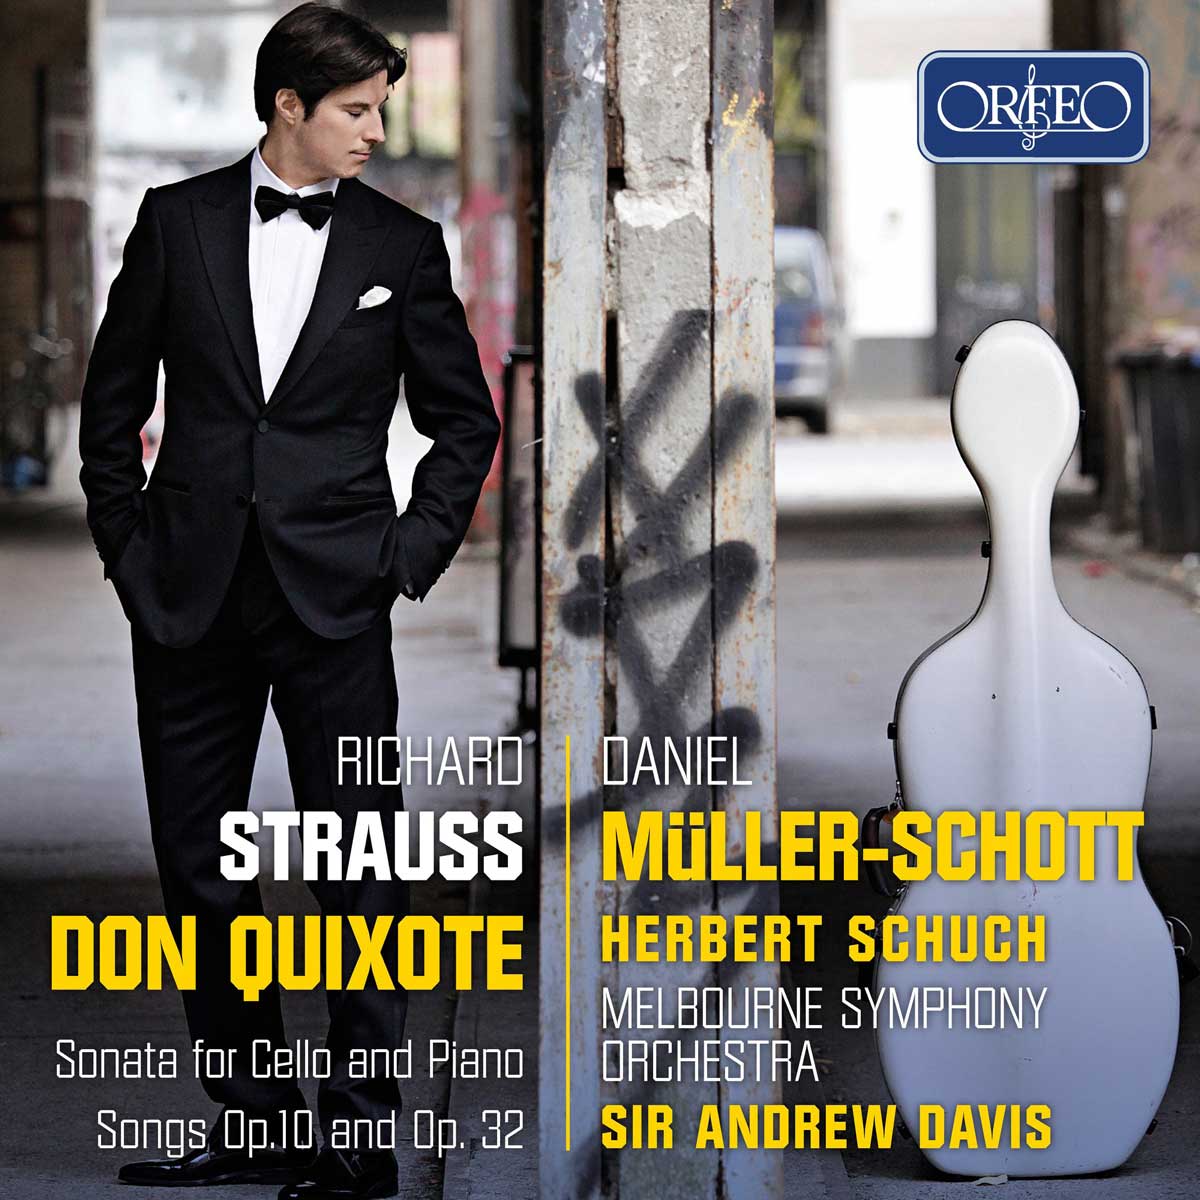 Nouveau CD de Daniel Müller-Schott chez Orfeo